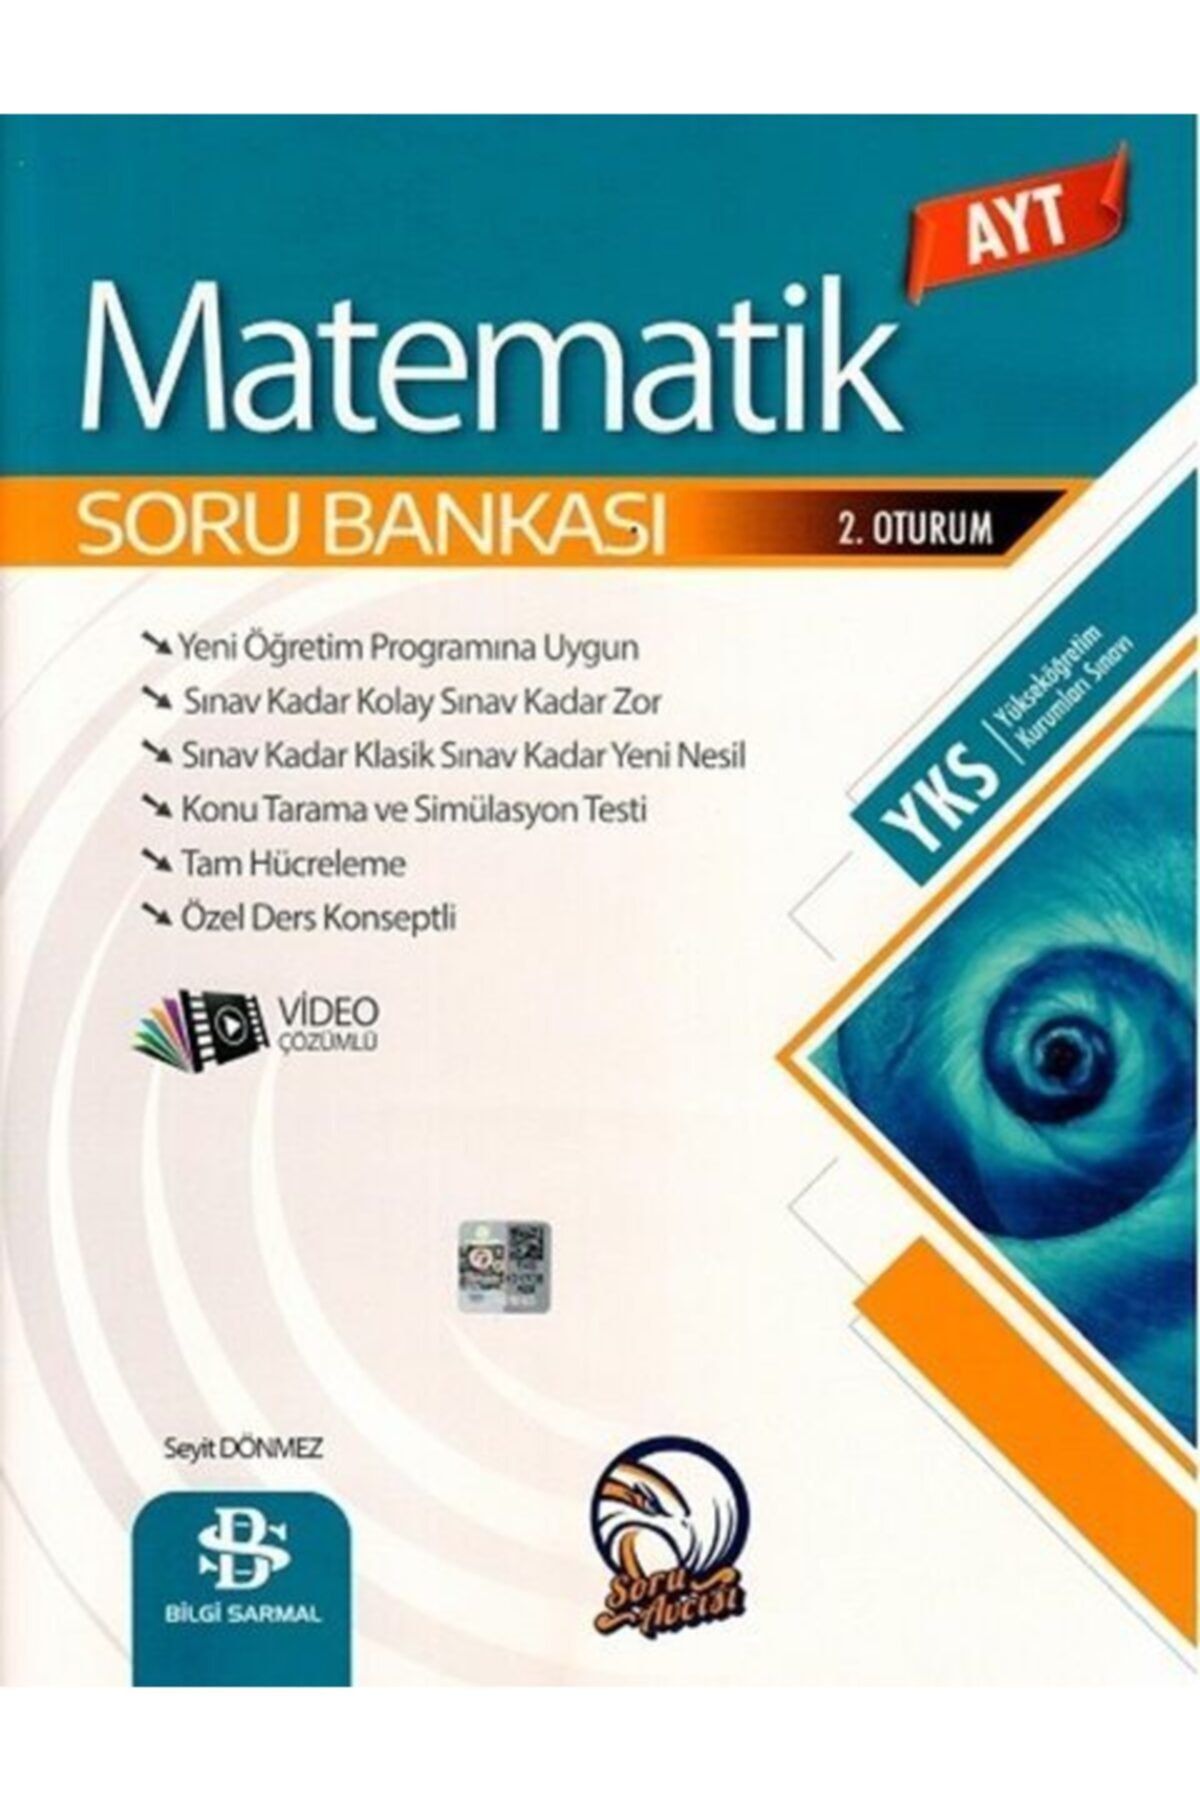 Bilgi Sarmal Yayınları Bilgi Sarmal Ayt Matematik Soru Bankası